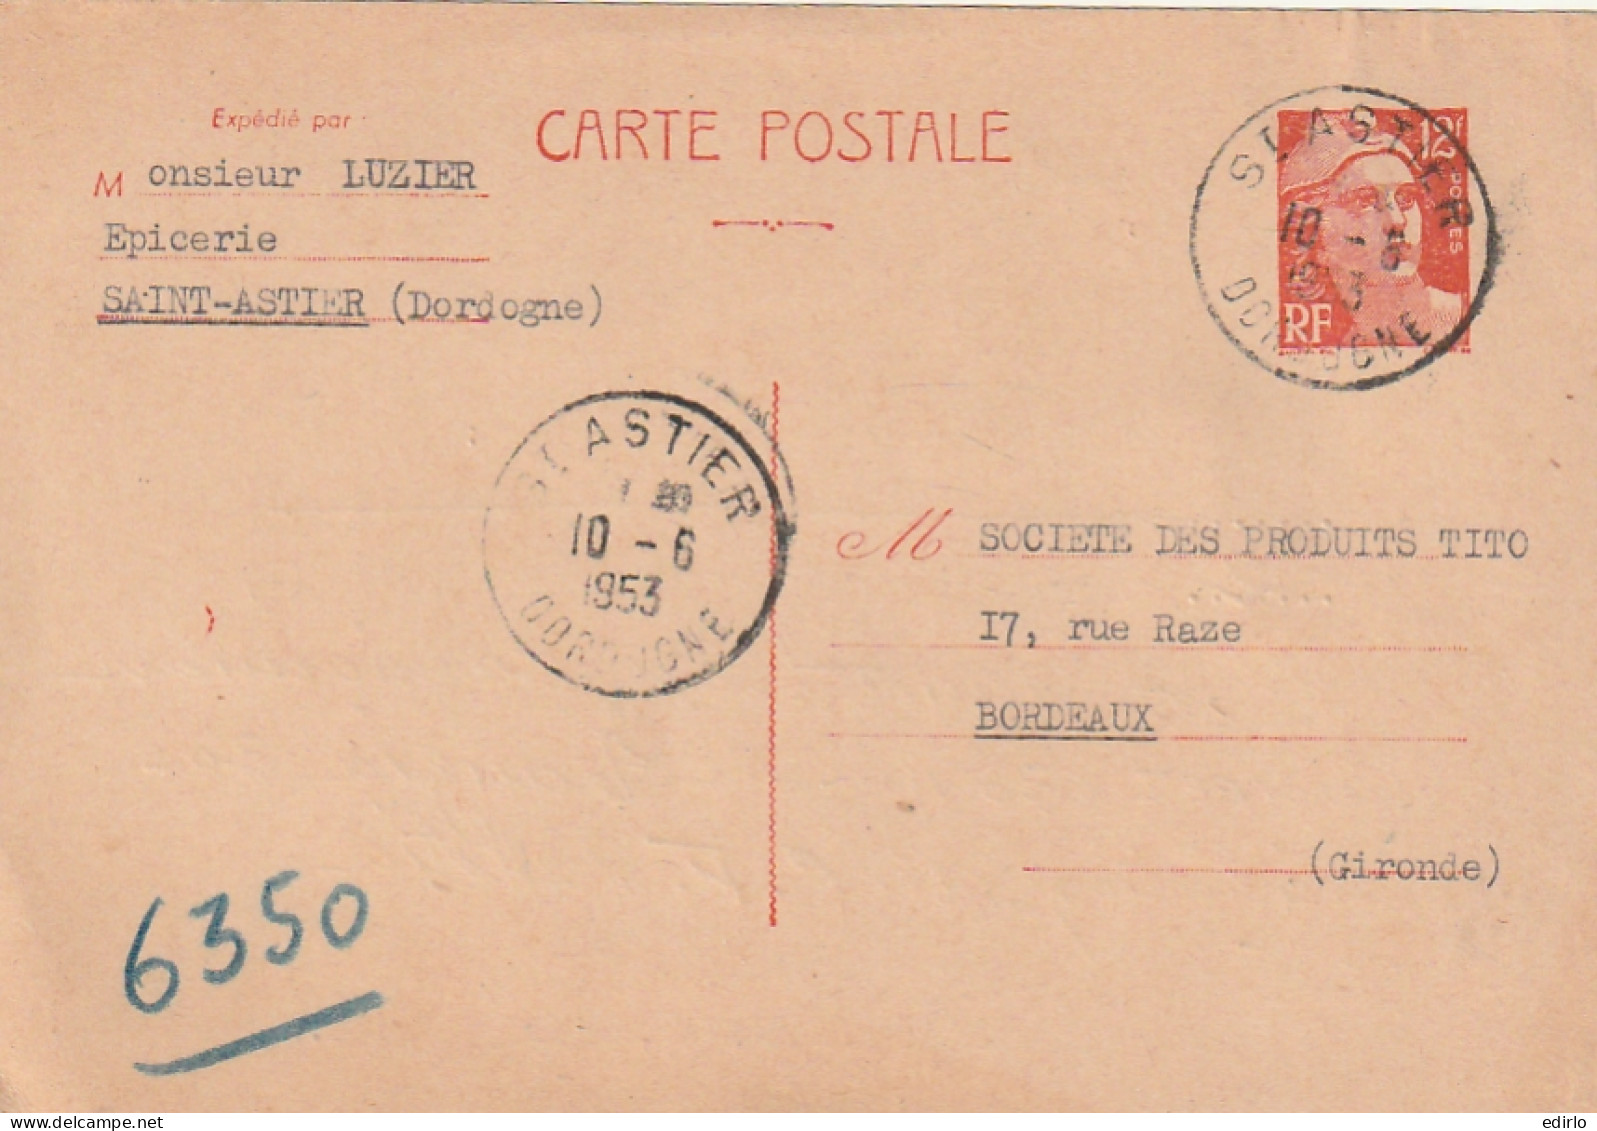 ///    FRANCE  ///  Entier Postal 813cp1  --- Gandon Recommandé -  Saint Astier Dordogne  - 1945-54 Marianne (Gandon)